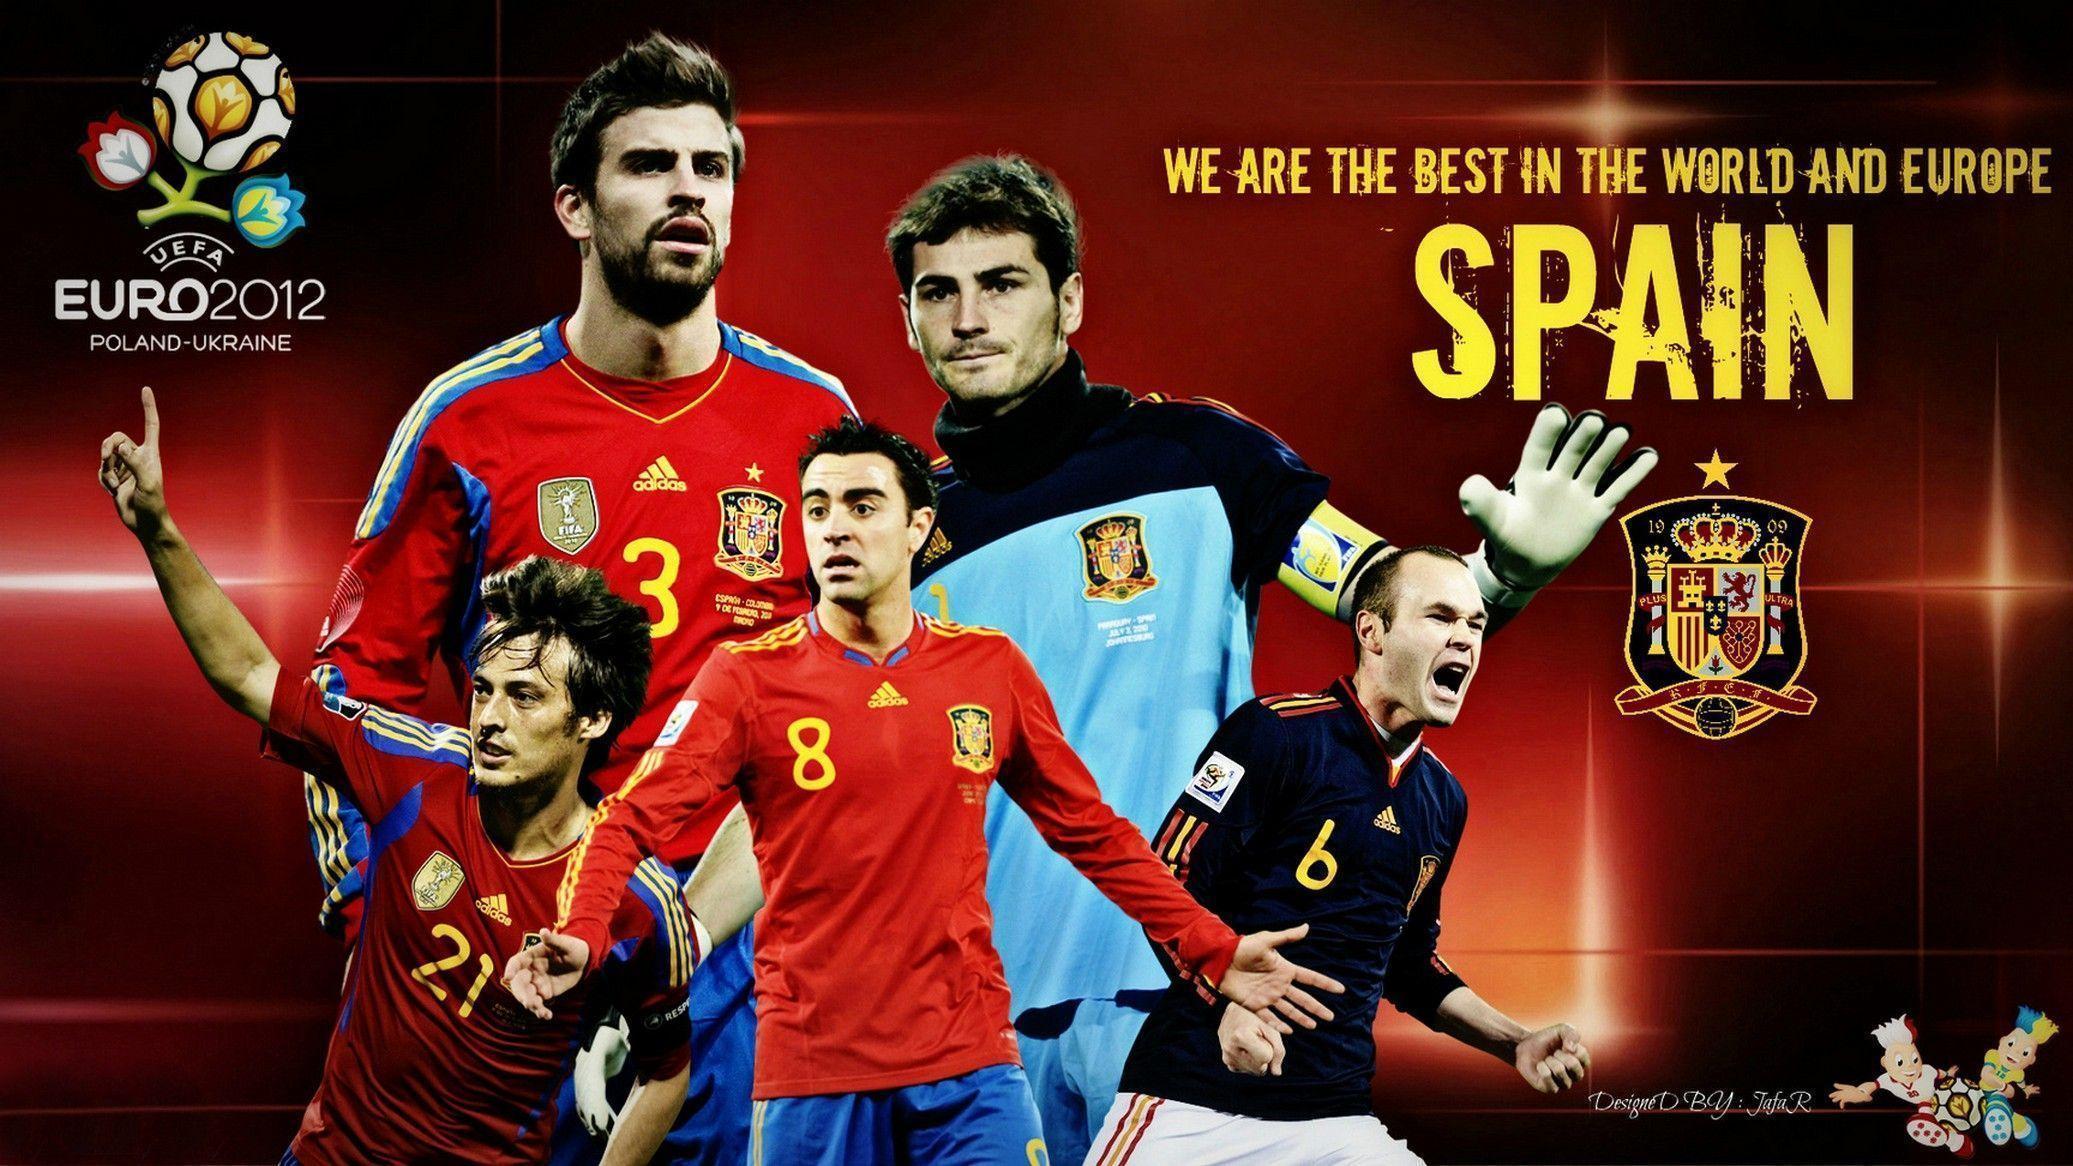 Wallpaper, Image For > Spain Football Logo Wallpaper Spain